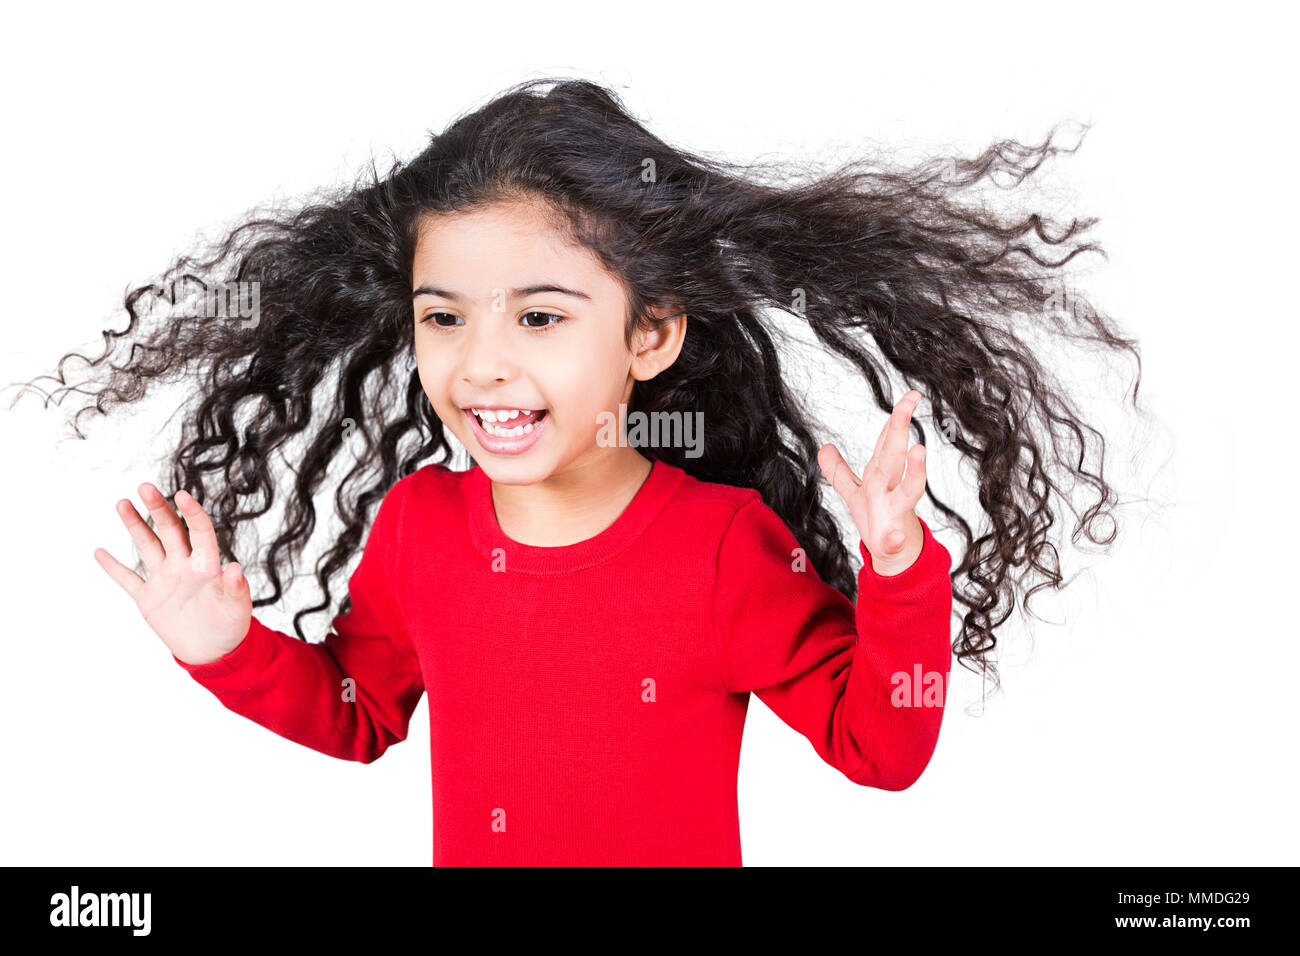 Un rire Kid Girl cheveux ébouriffés s'Amusant Cheerful bénéficiant Banque D'Images